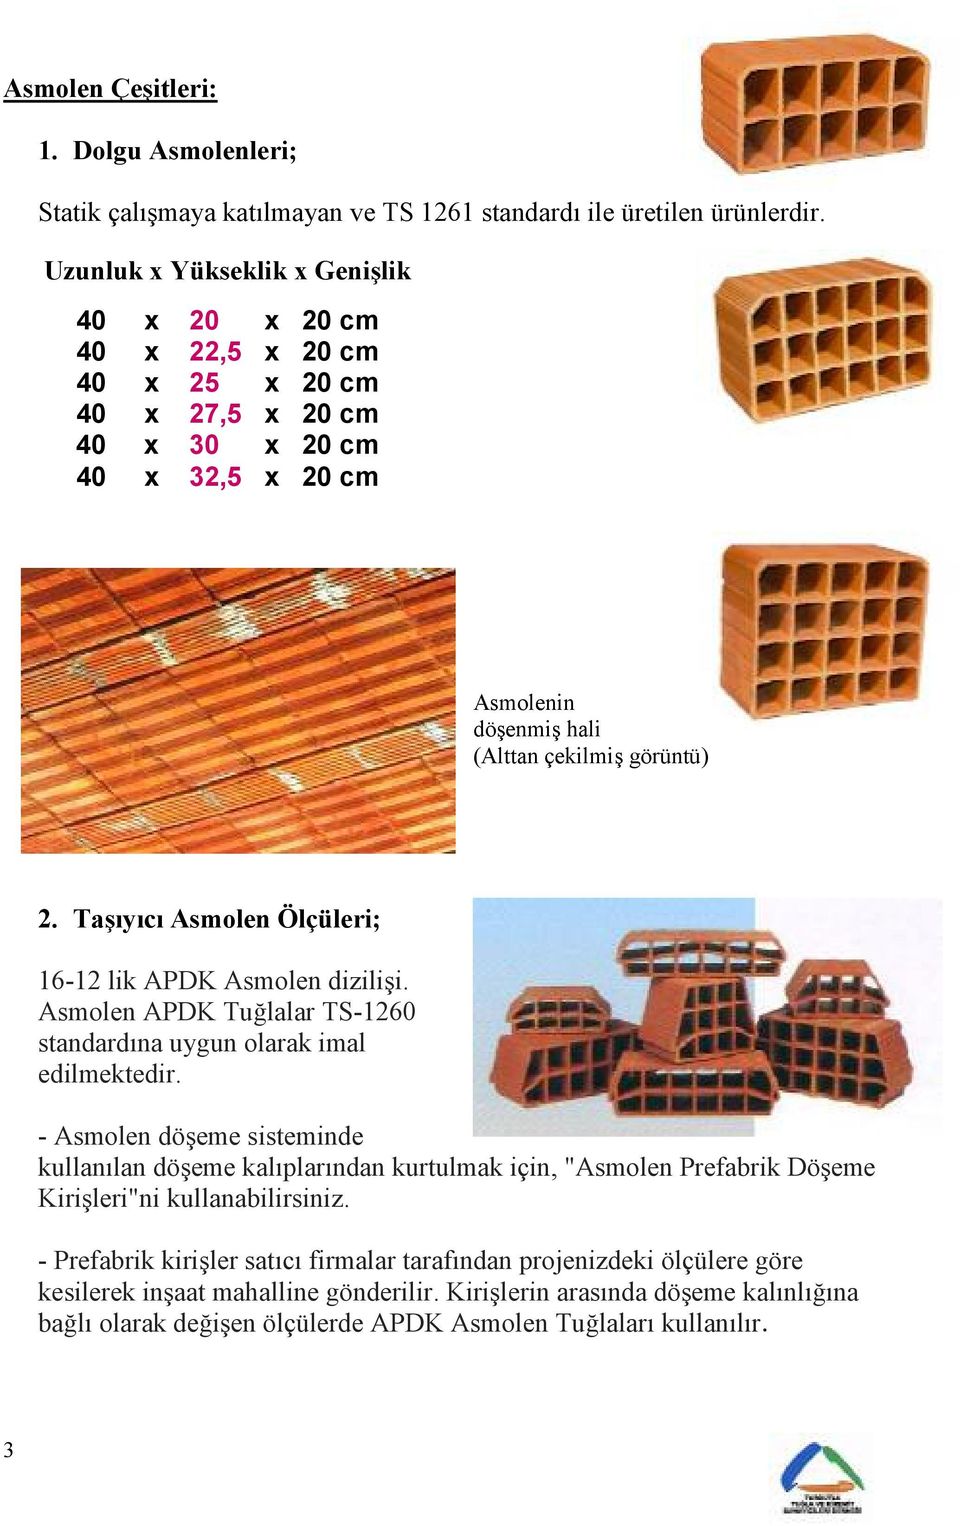 Ta,yc Asmolen Ölçüleri; 16-12 lik APDK Asmolen dizilii. Asmolen APDK Tulalar TS-1260 standardna uygun olarak imal edilmektedir.